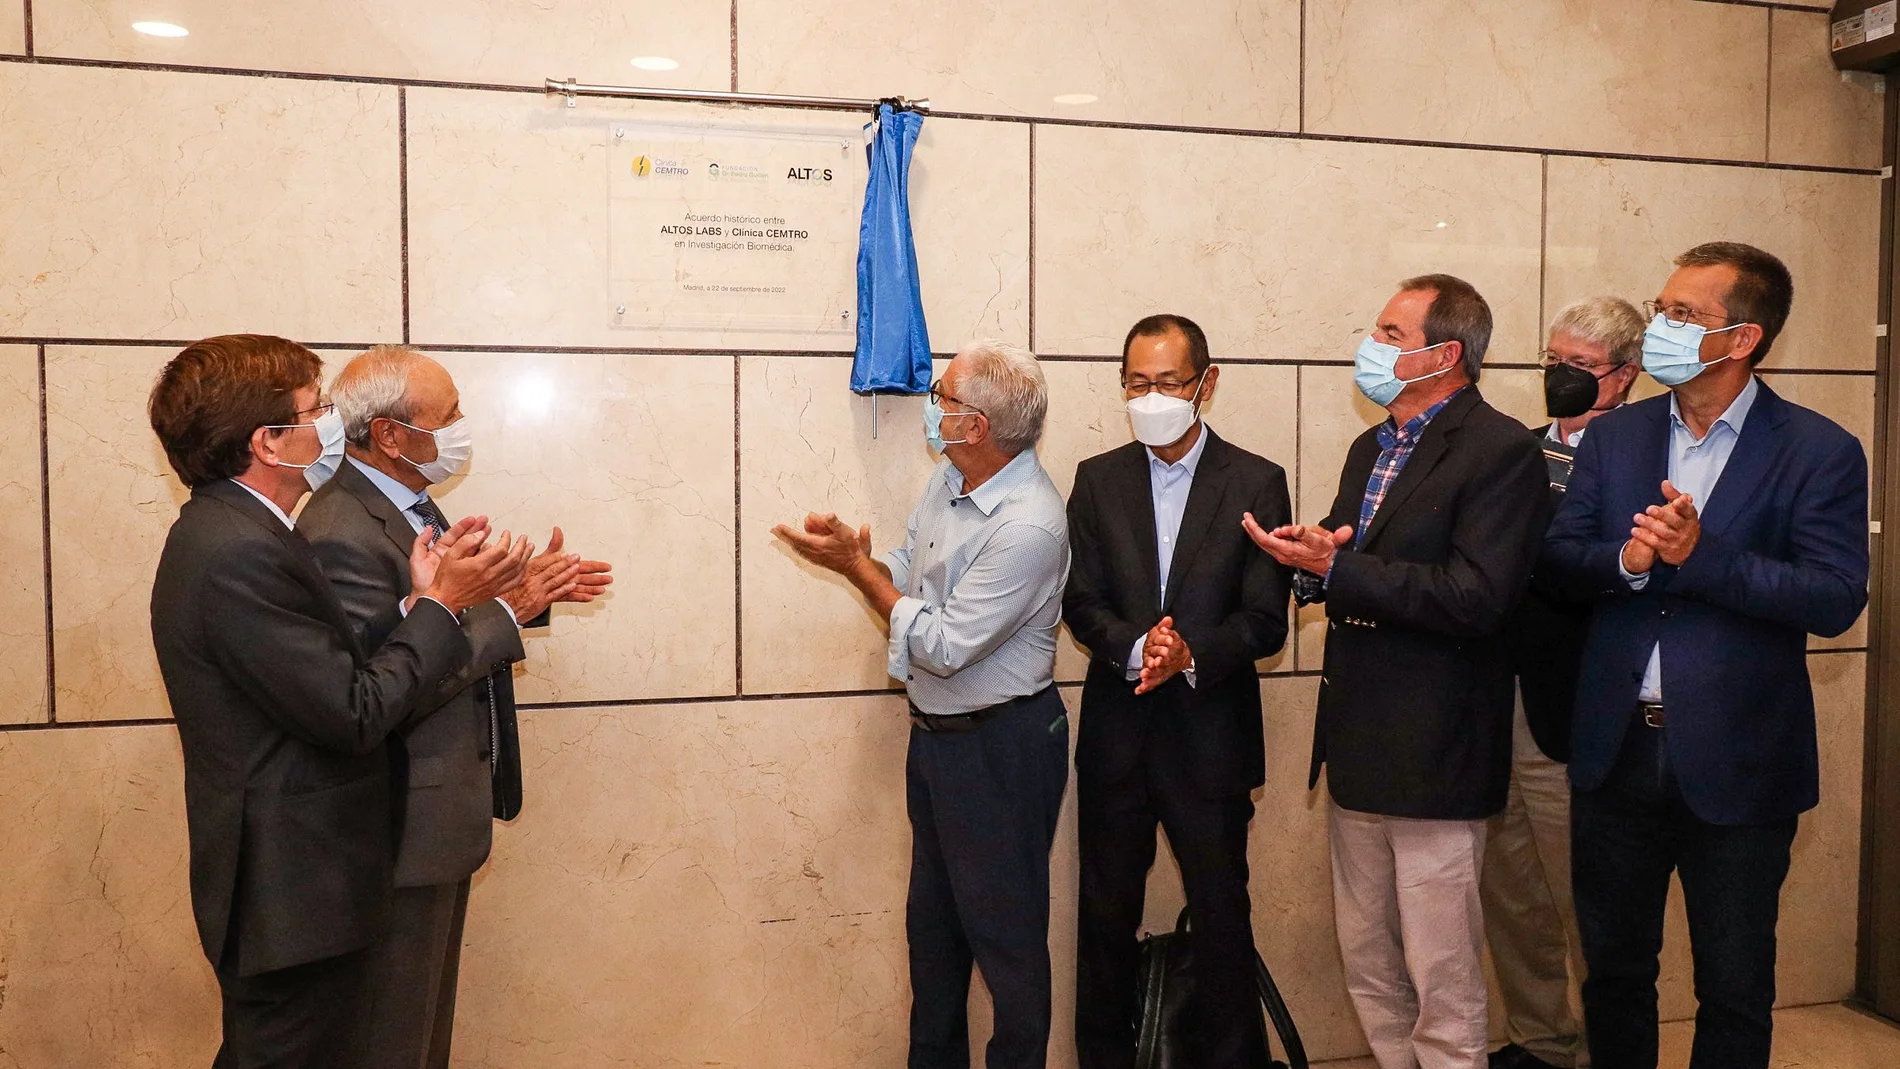 El equipo de Altos Labs y el Dr. Pedro Guillén descubren la placa conmemorativa del acuerdo en presencia del alcalde de Madrid